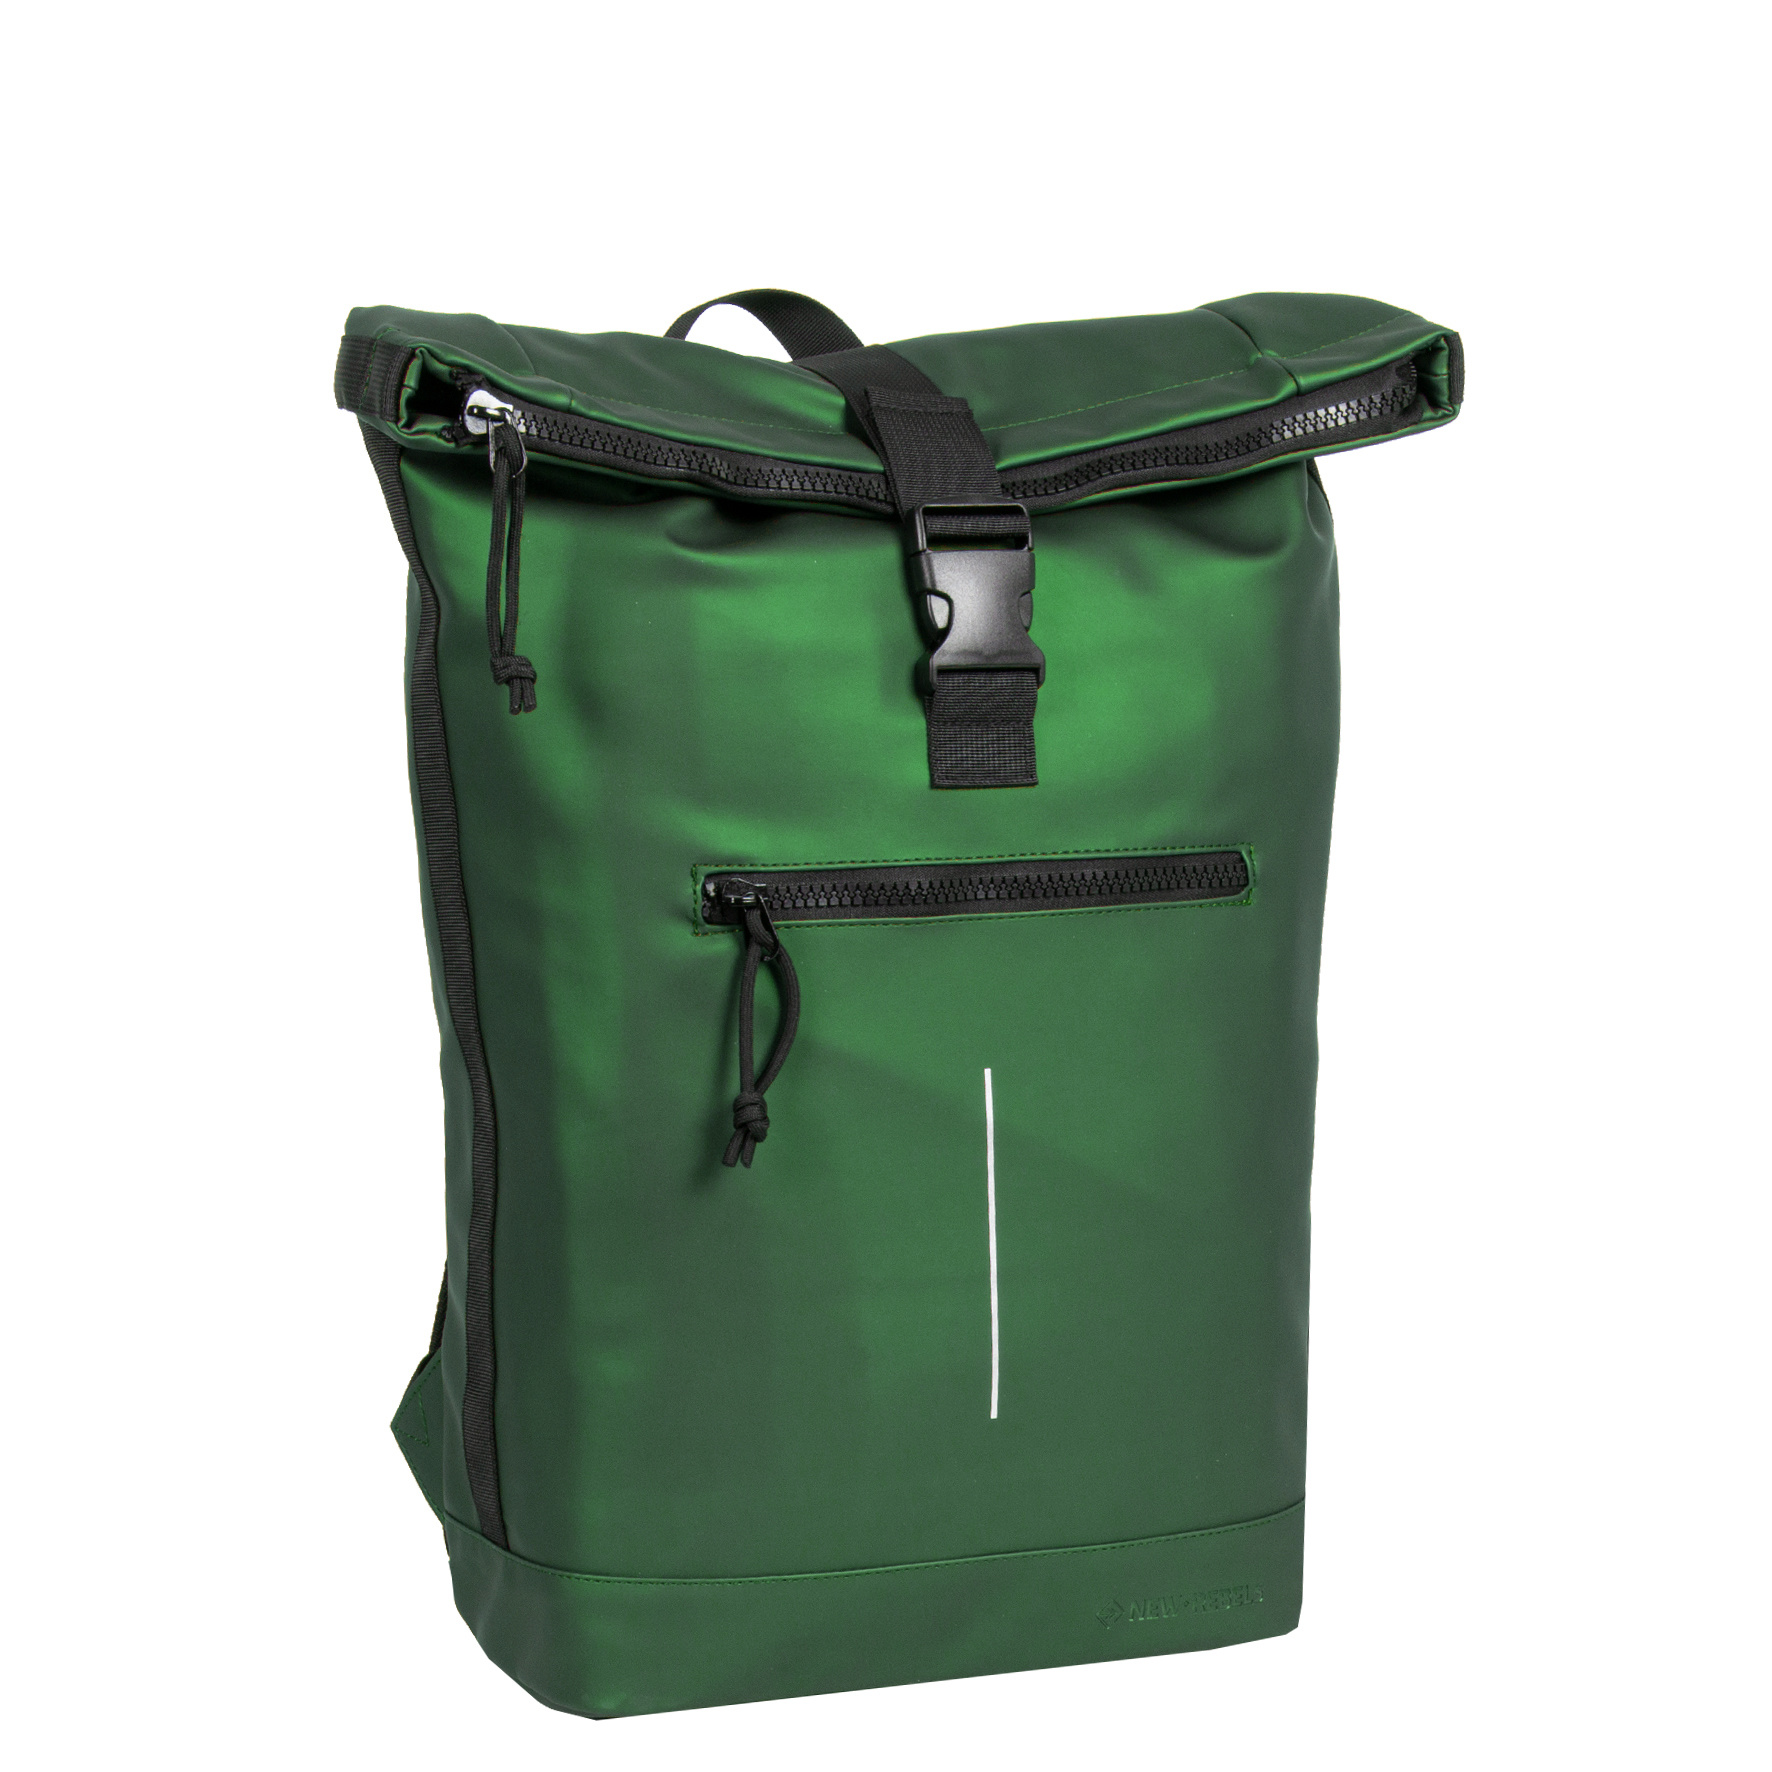 New Rebels® Mart - Rugtas - Groen - Waterbestendig - Roll-top - 15.6151413121087 - 30x12x43cm - Rugzak / Backpack